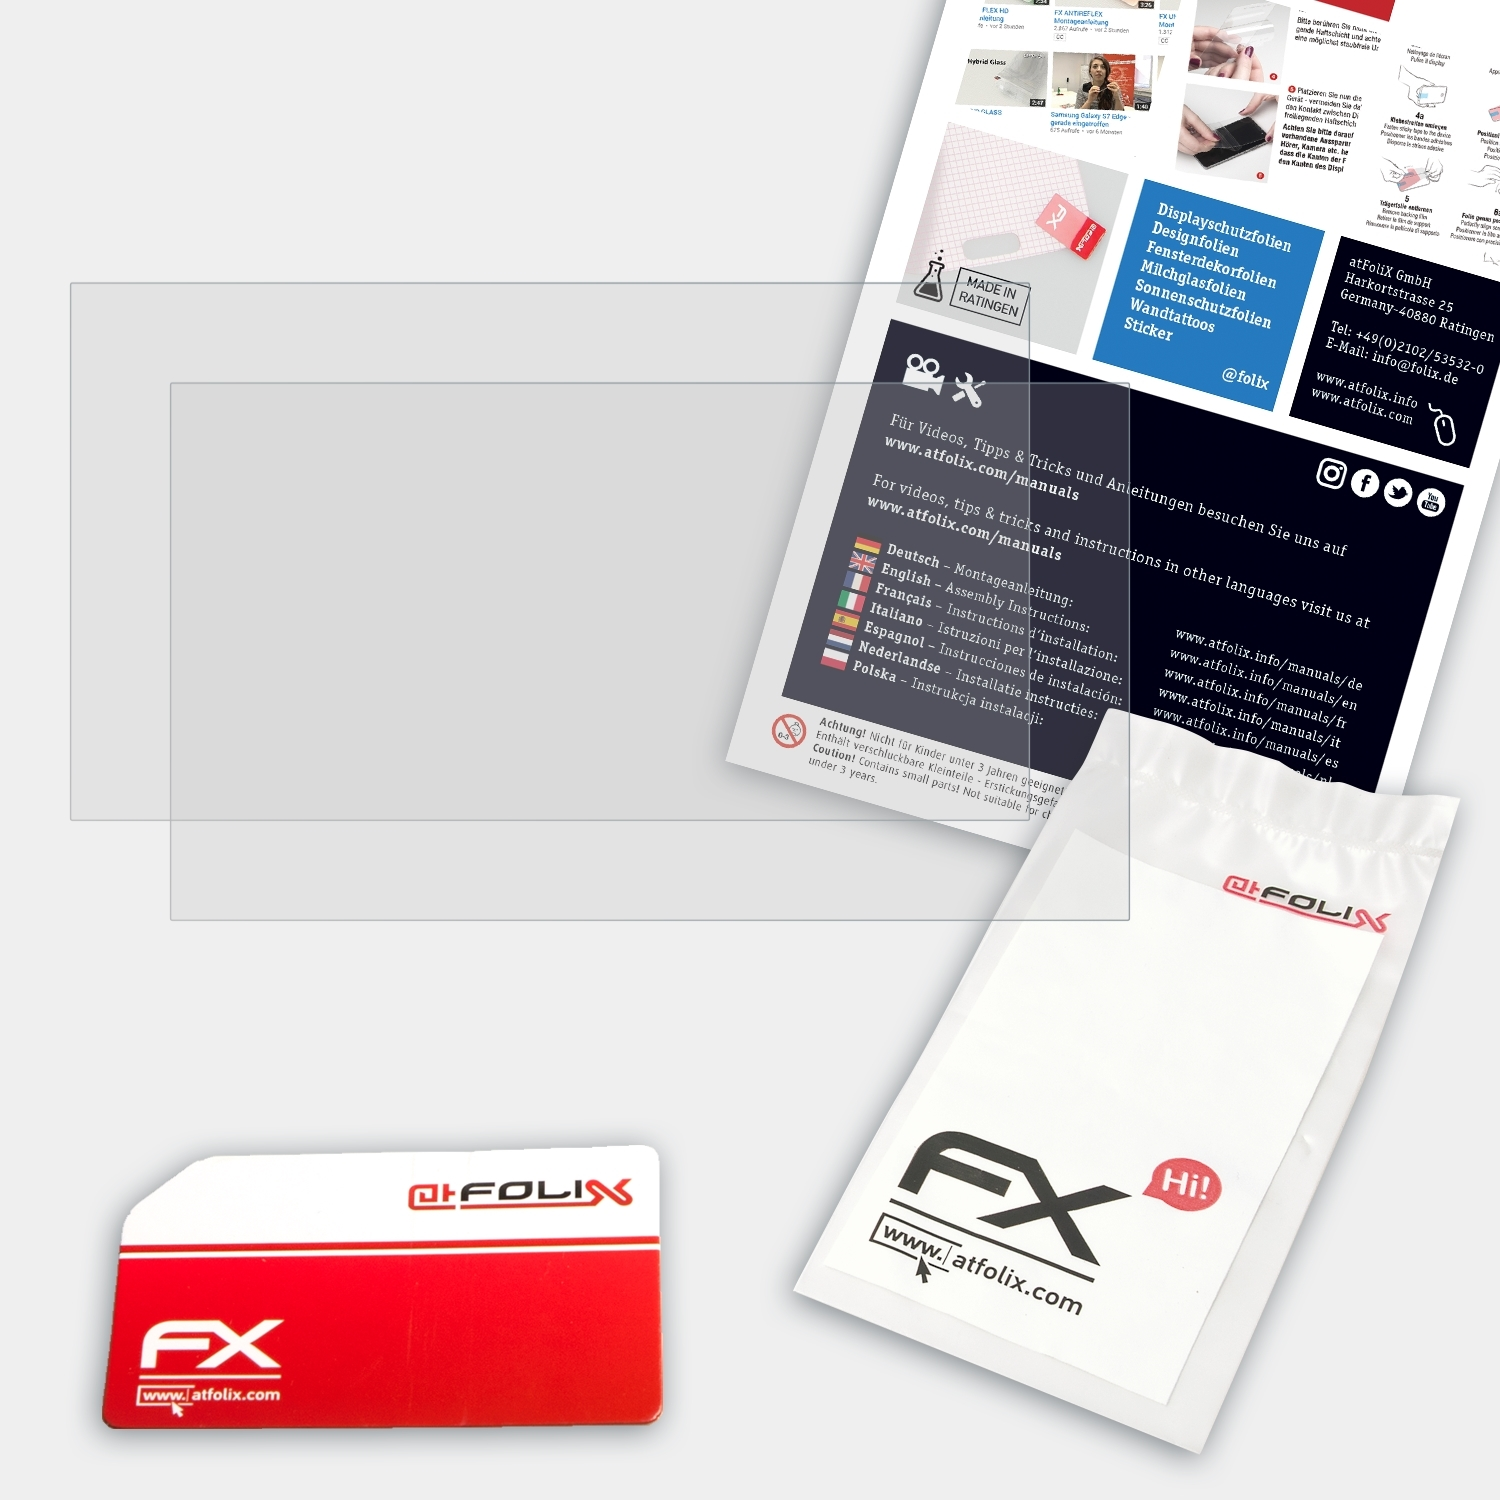 FX-Antireflex ATFOLIX Asus Gaming TUF 2x FX705) Displayschutz(für